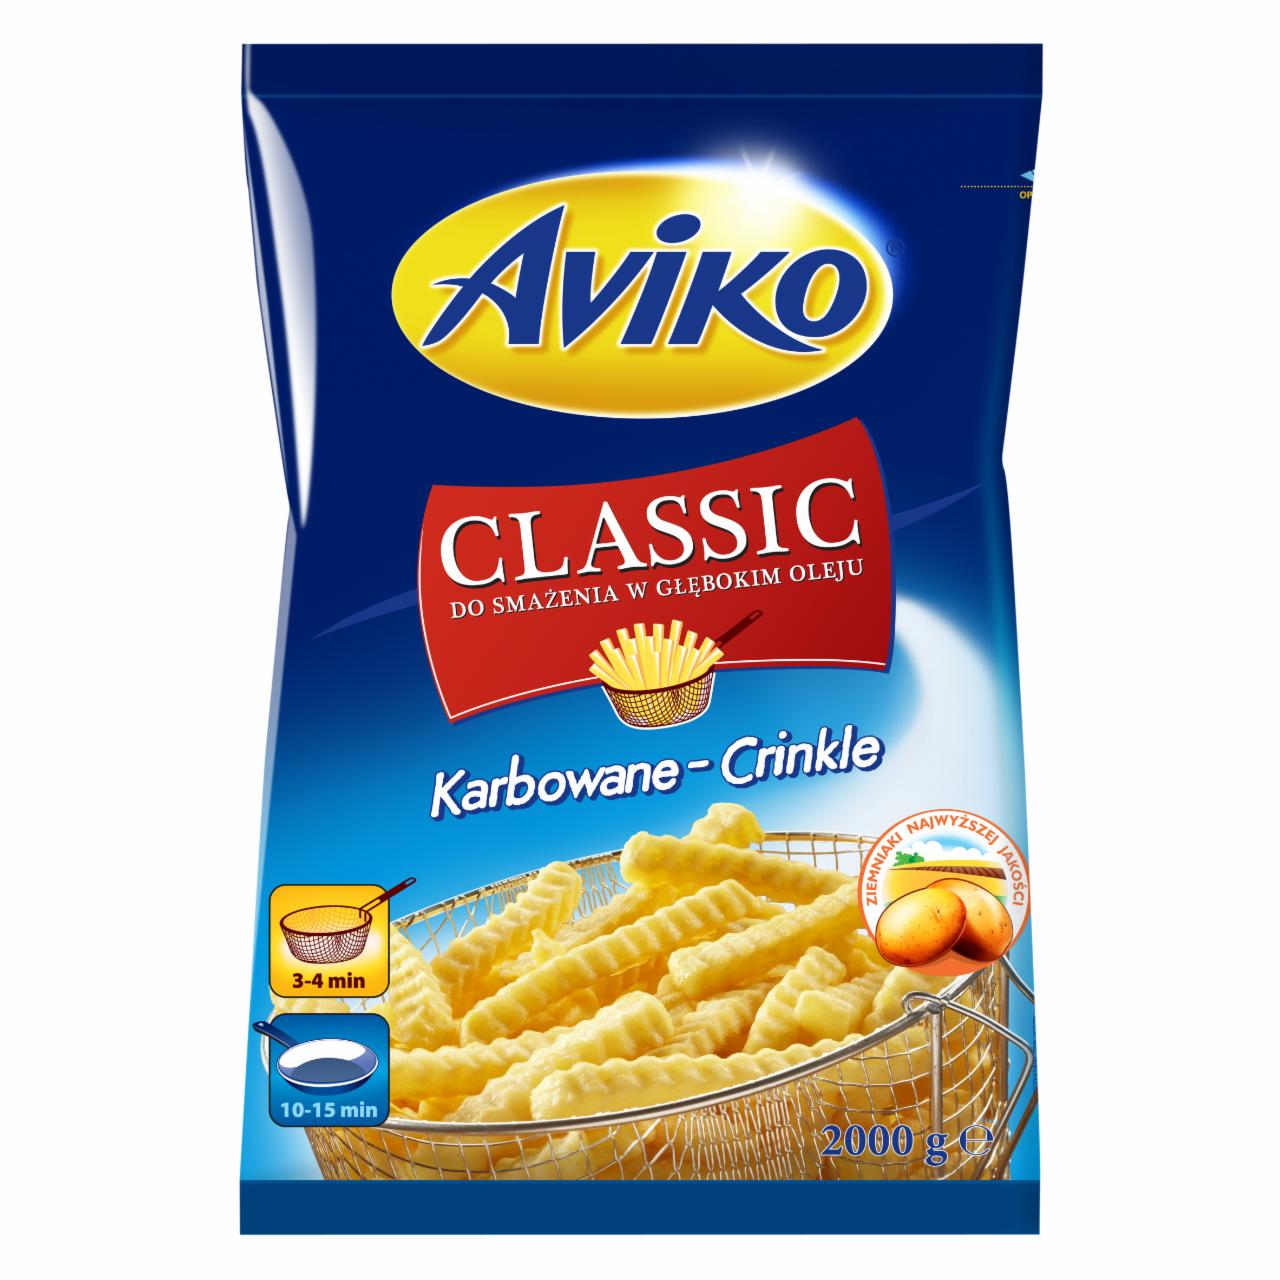 Zdjęcia - Aviko Classic Karbowane-Crinkle Frytki 2000 g